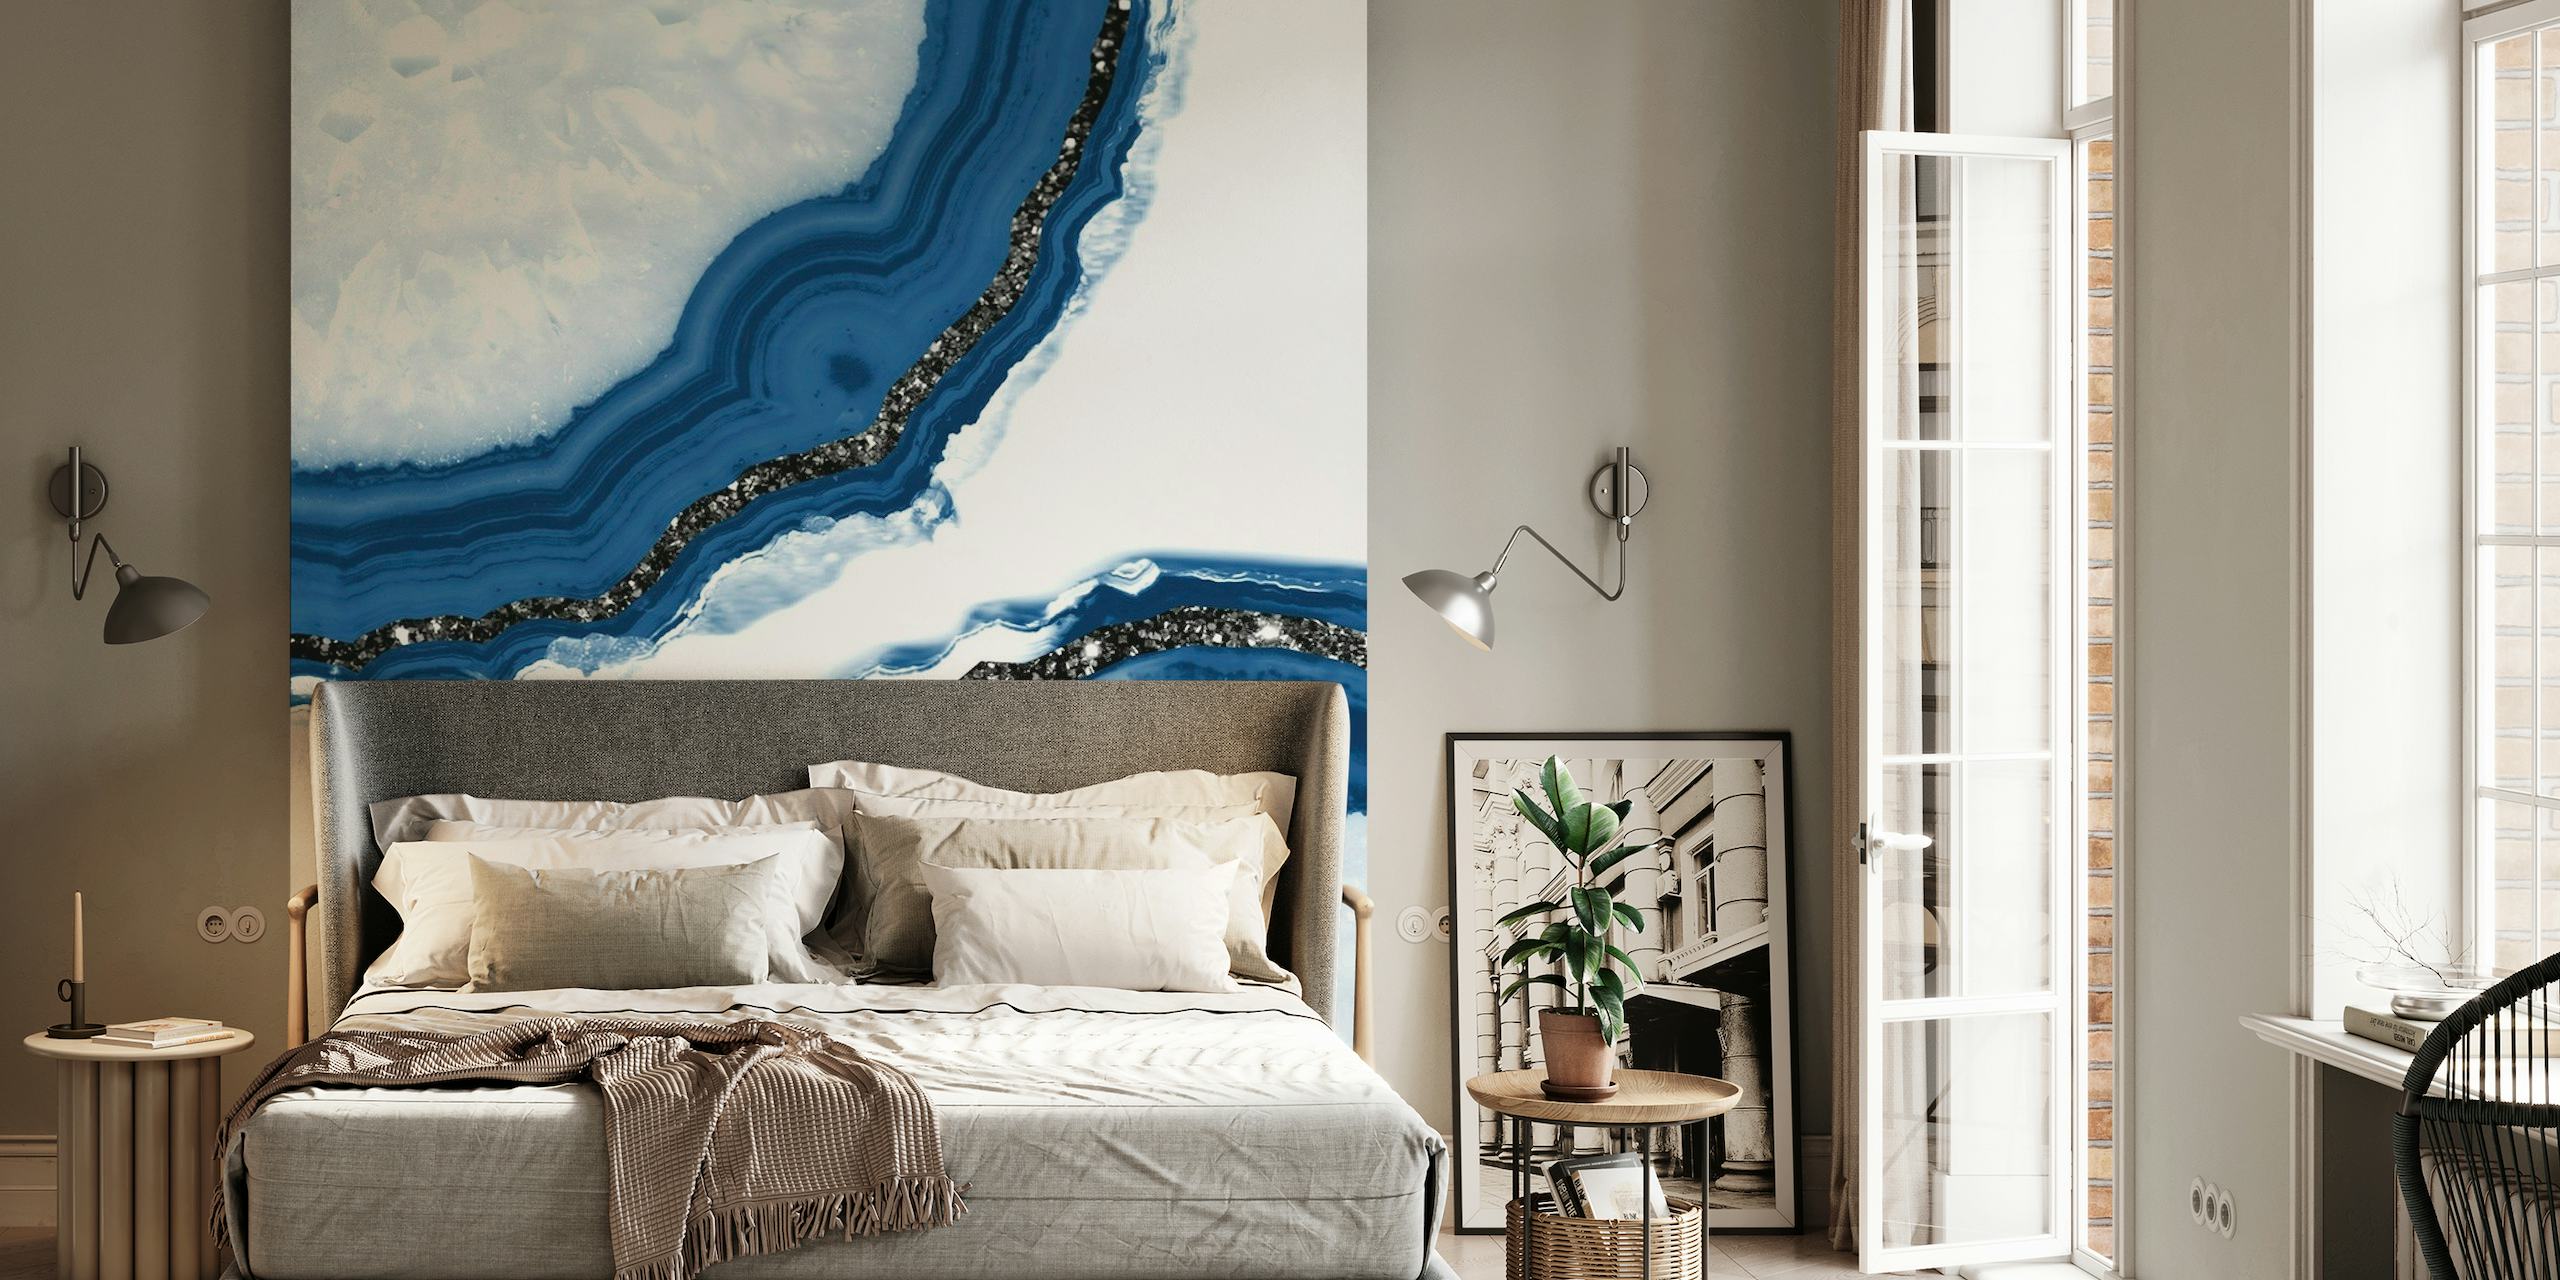 Elegante, op agaat geïnspireerde muurschildering met blauwe en witte patronen en glitteraccenten